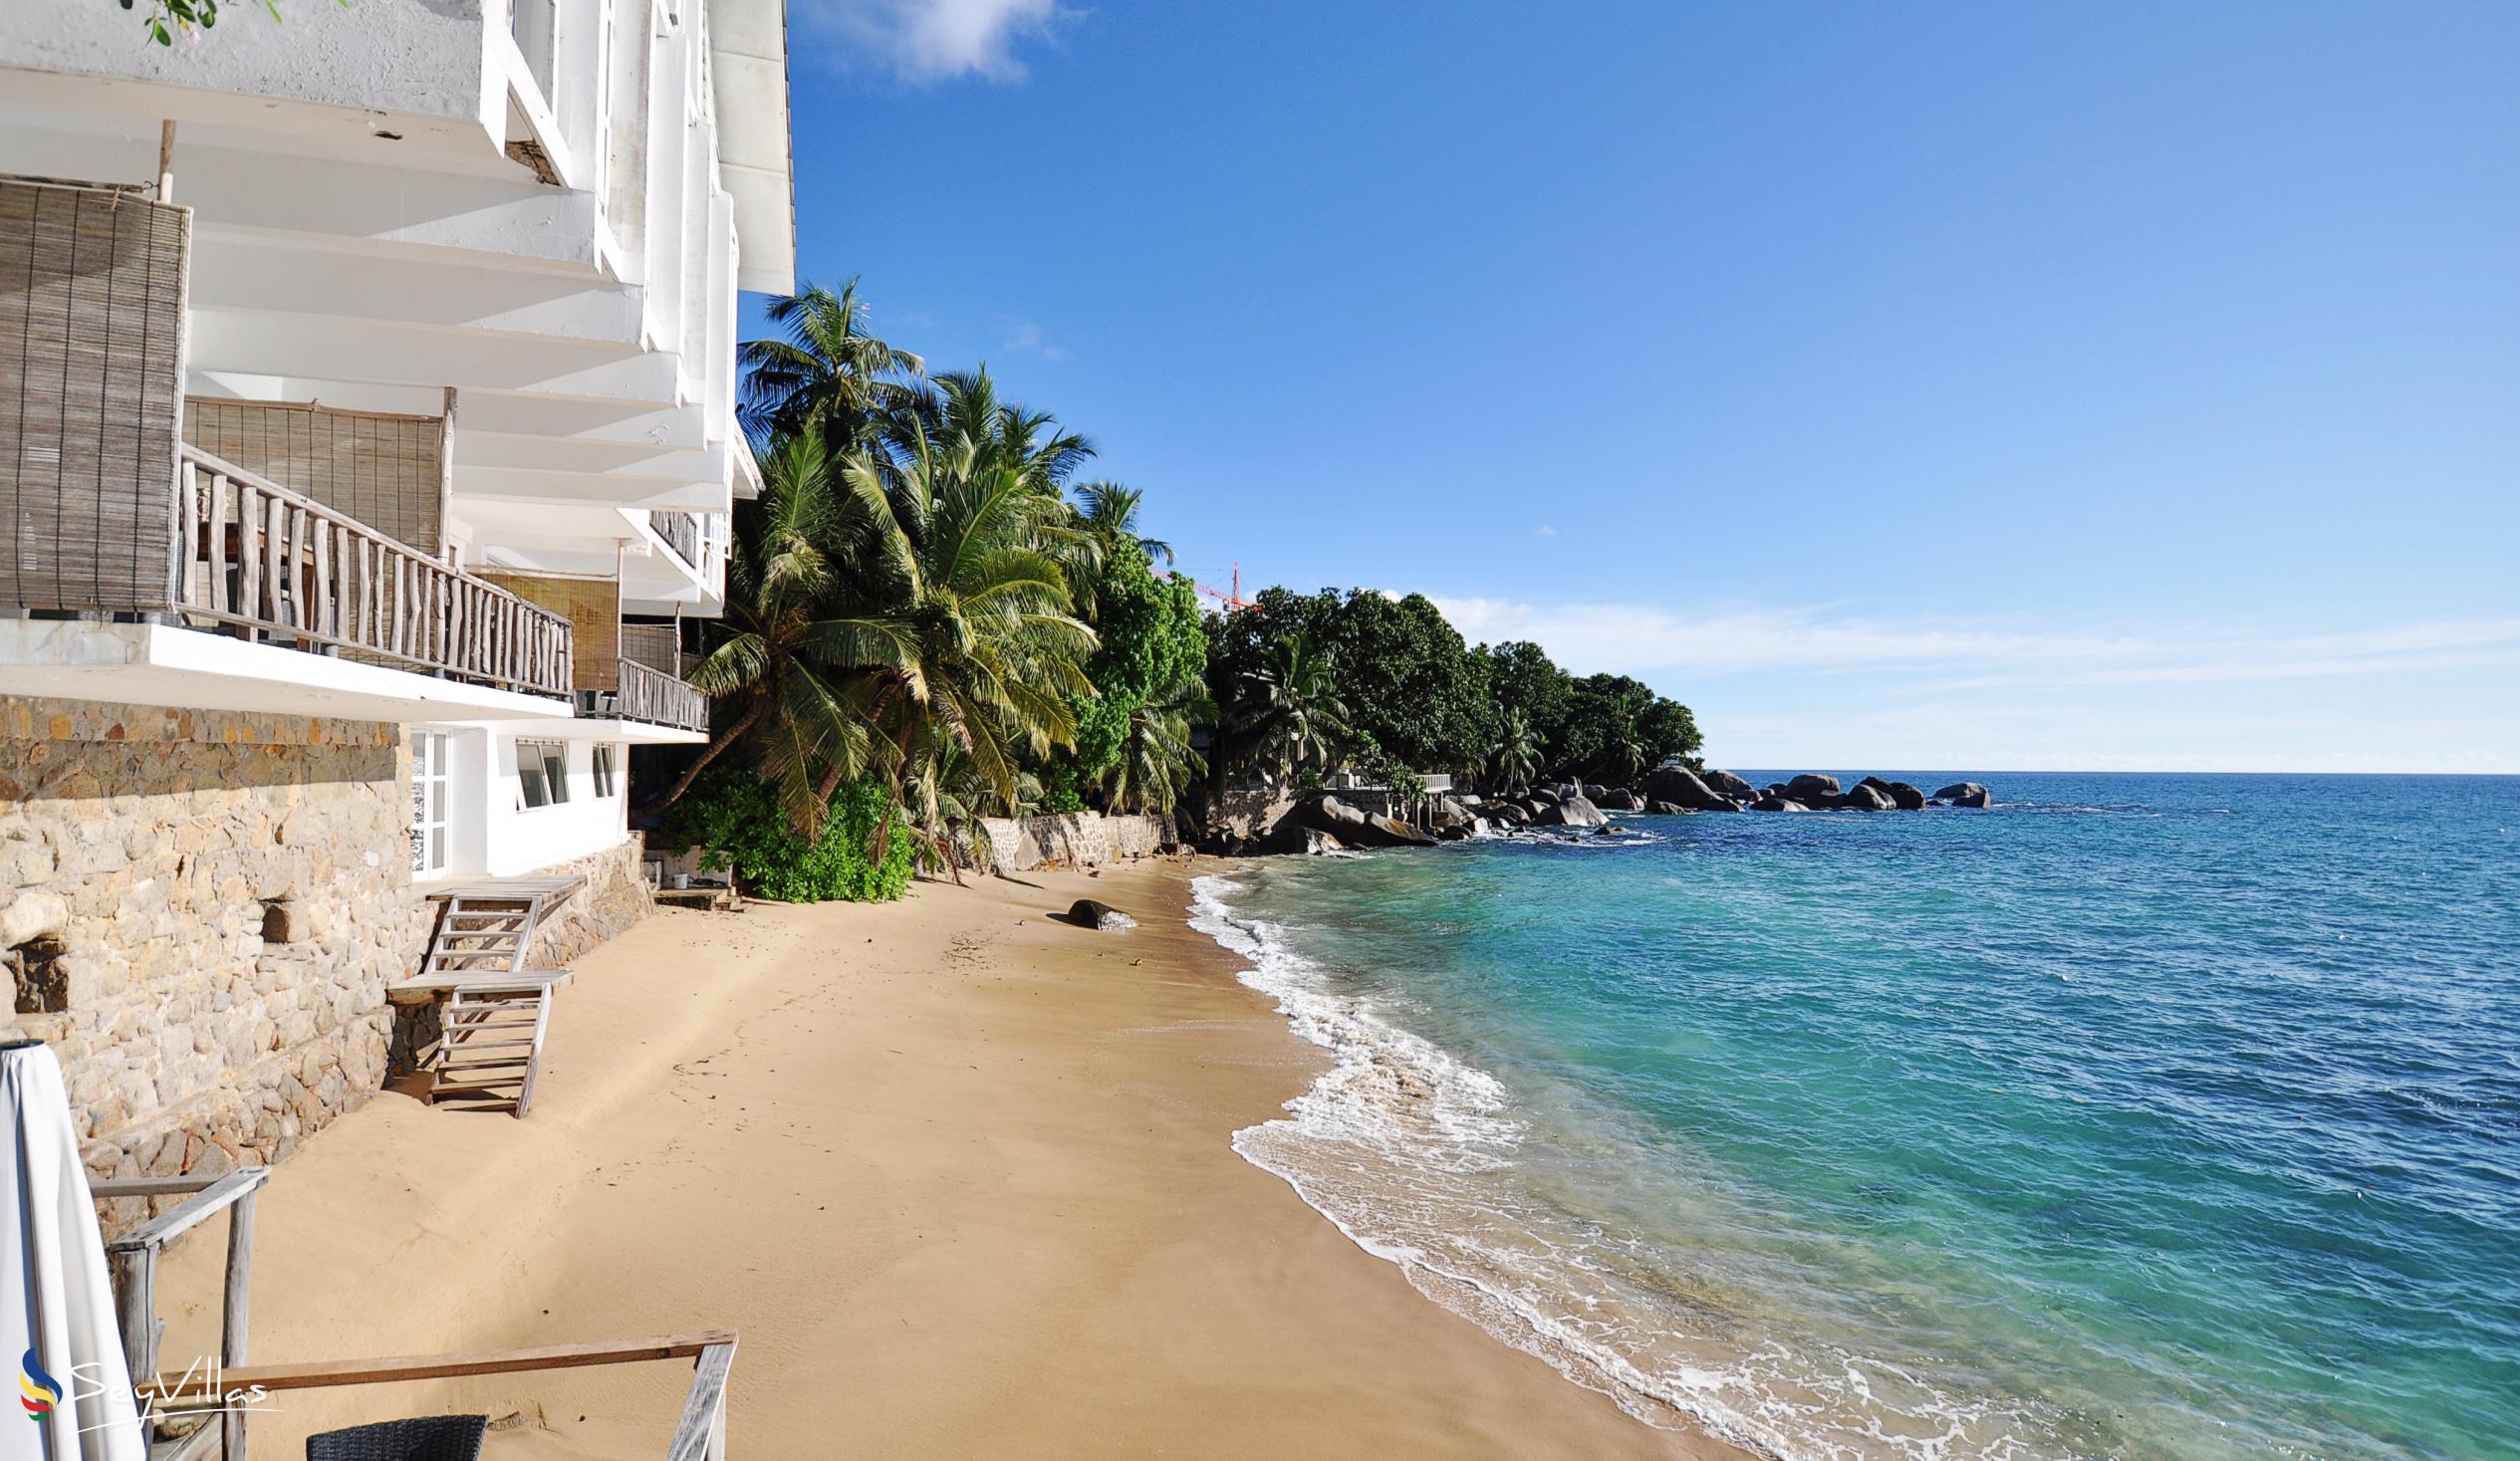 Foto 3: Bliss Hotel - Aussenbereich - Mahé (Seychellen)